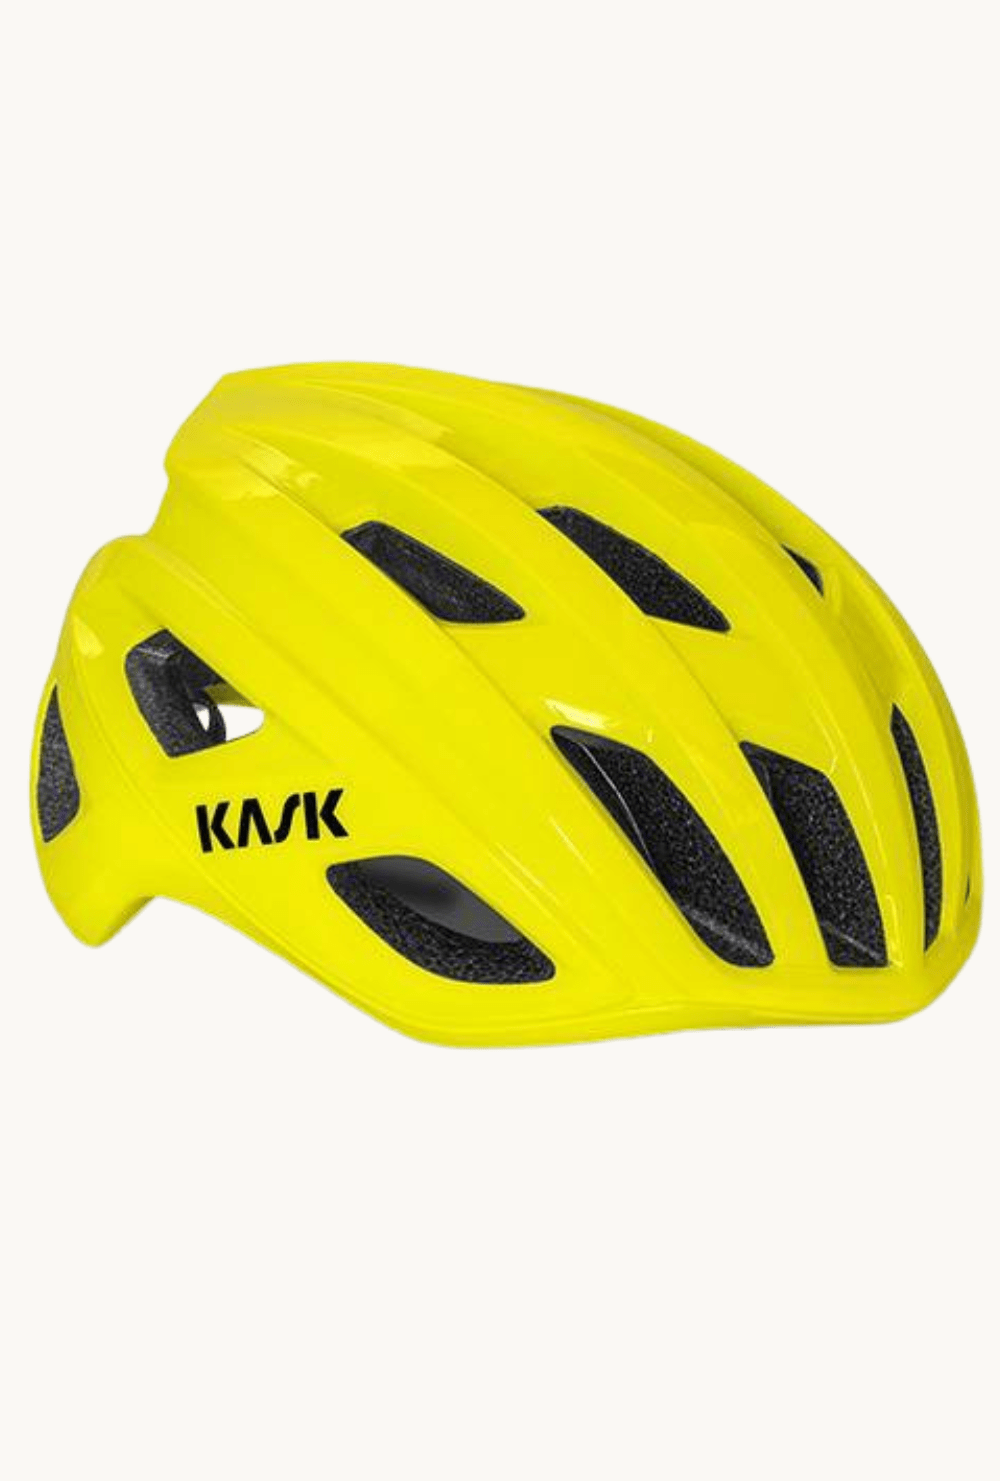 Helmet - Kask Mojito Yellowmedium / Yellow